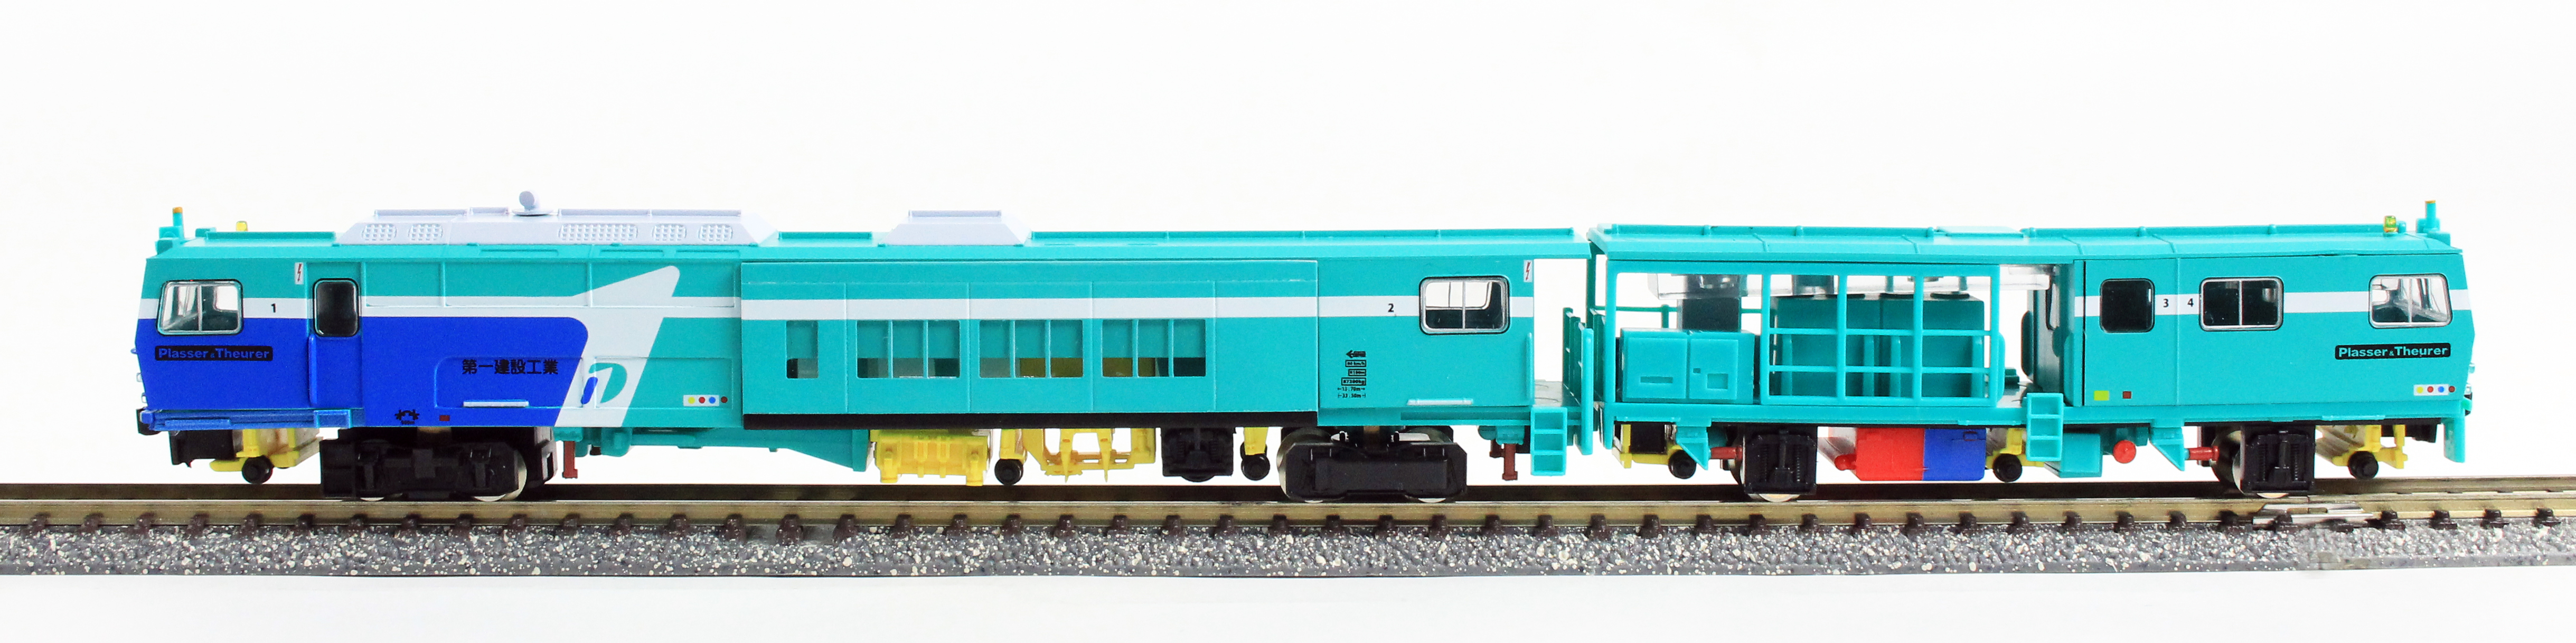 グリーンマックス 4713 マルチプルタイタンパー 第一建設色 M 鉄道模型 